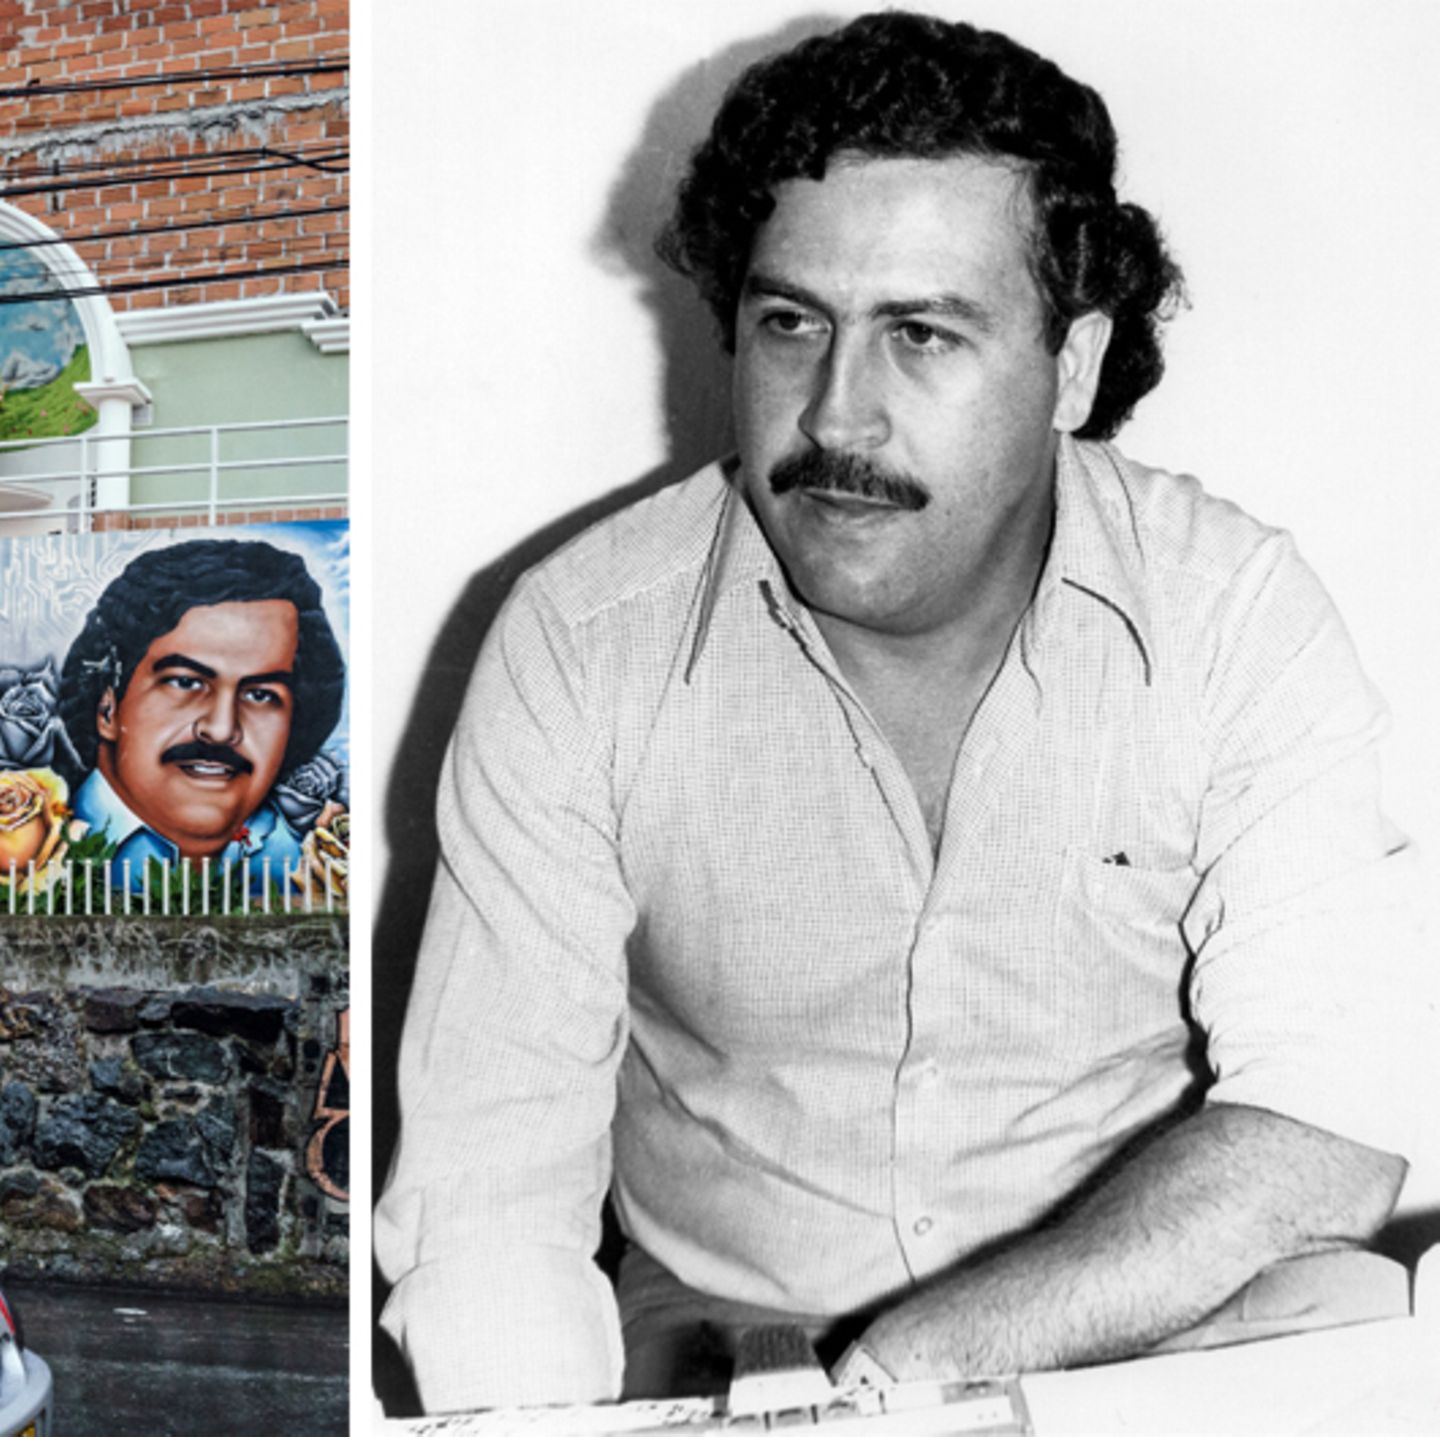 lo hizo Llevar Recomendación Drogenboss Pablo Escobar – bizzarer Hype um den Patron des Bösen | STERN.de